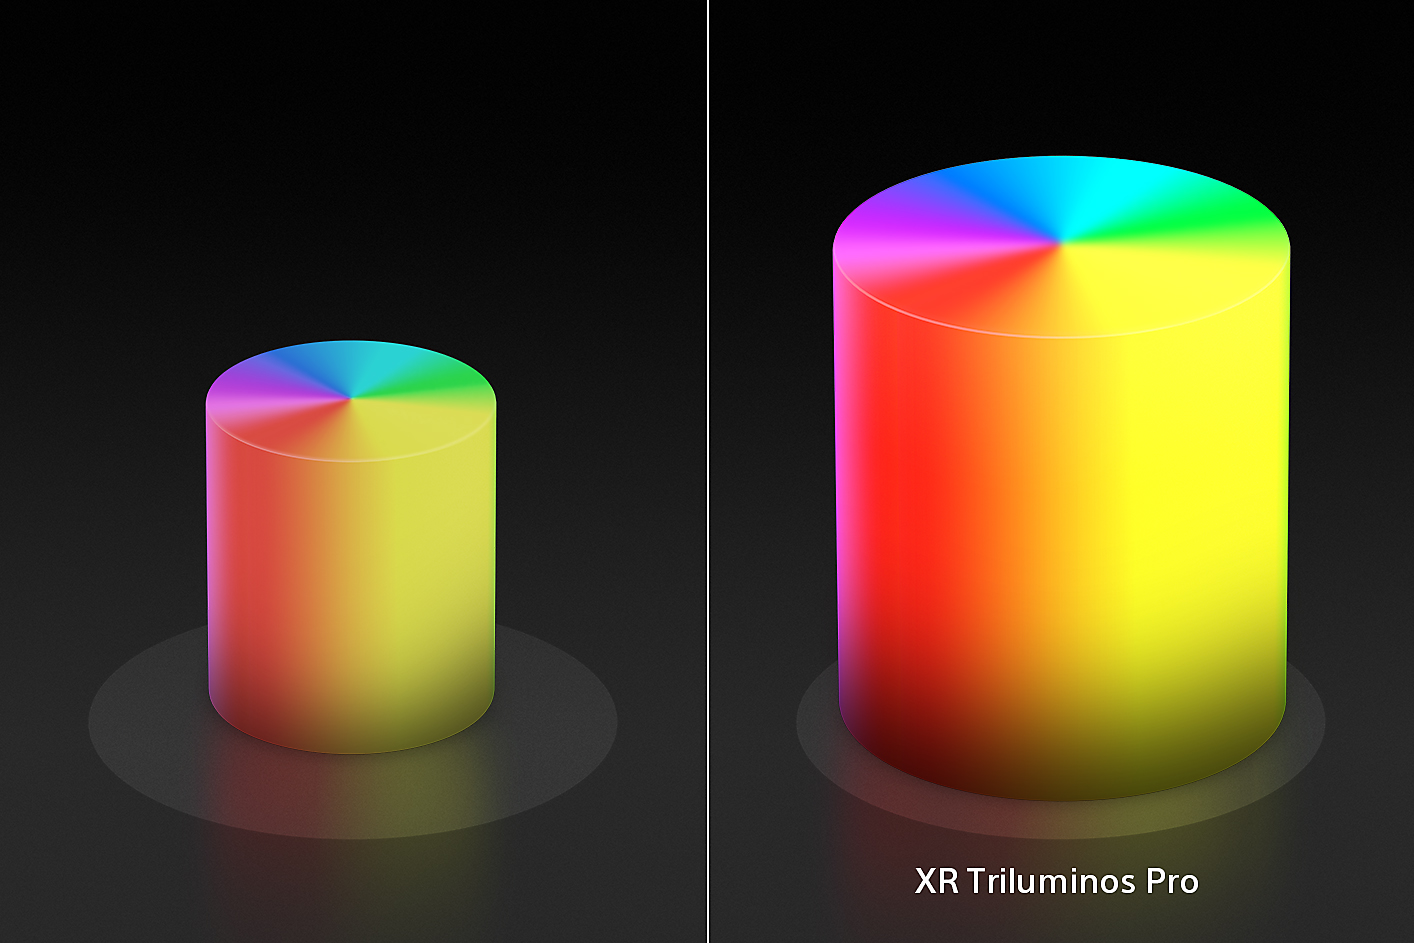 分割螢幕中為兩個蠟燭狀的色錐，左側較小，右側較大的色錐採用了 XR Triluminos Pro 的增強型色彩和紋理